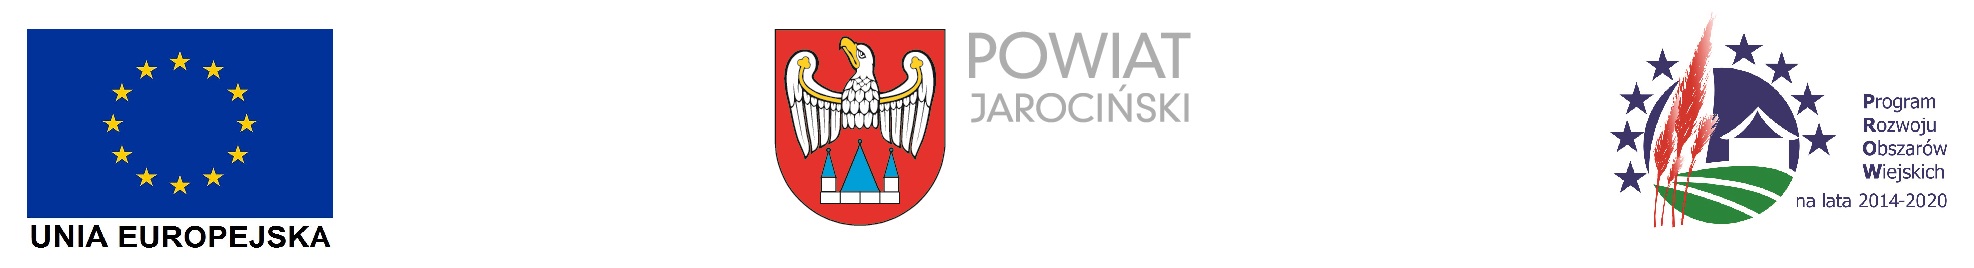 logotypy Unia Europejska, Powiat Jarociński, Program Rozwoju Obszarów Wiejskich